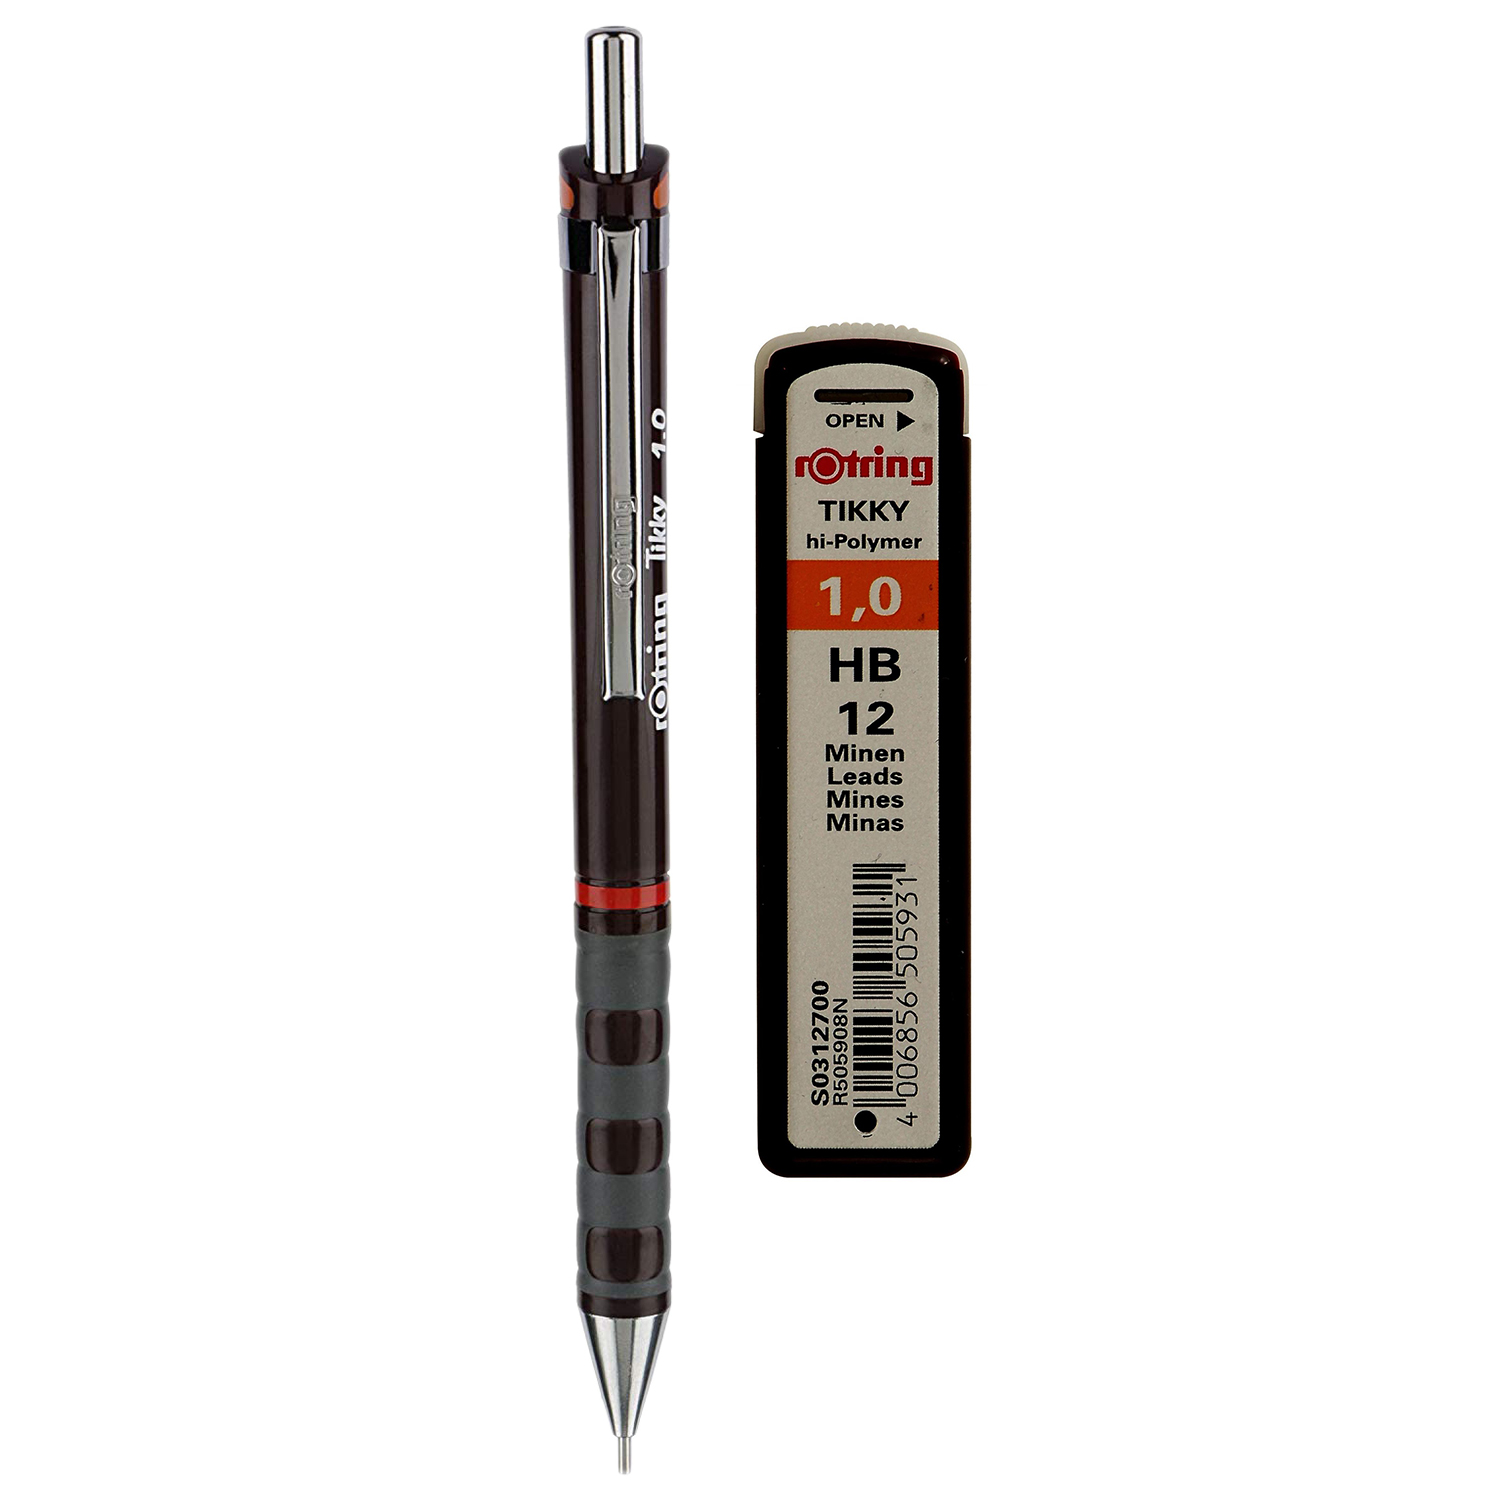 مداد نوکی 1.0 میلی متری روترینگ مدل Tikky به همراه نوک 1.0 میلی متری روترینگ